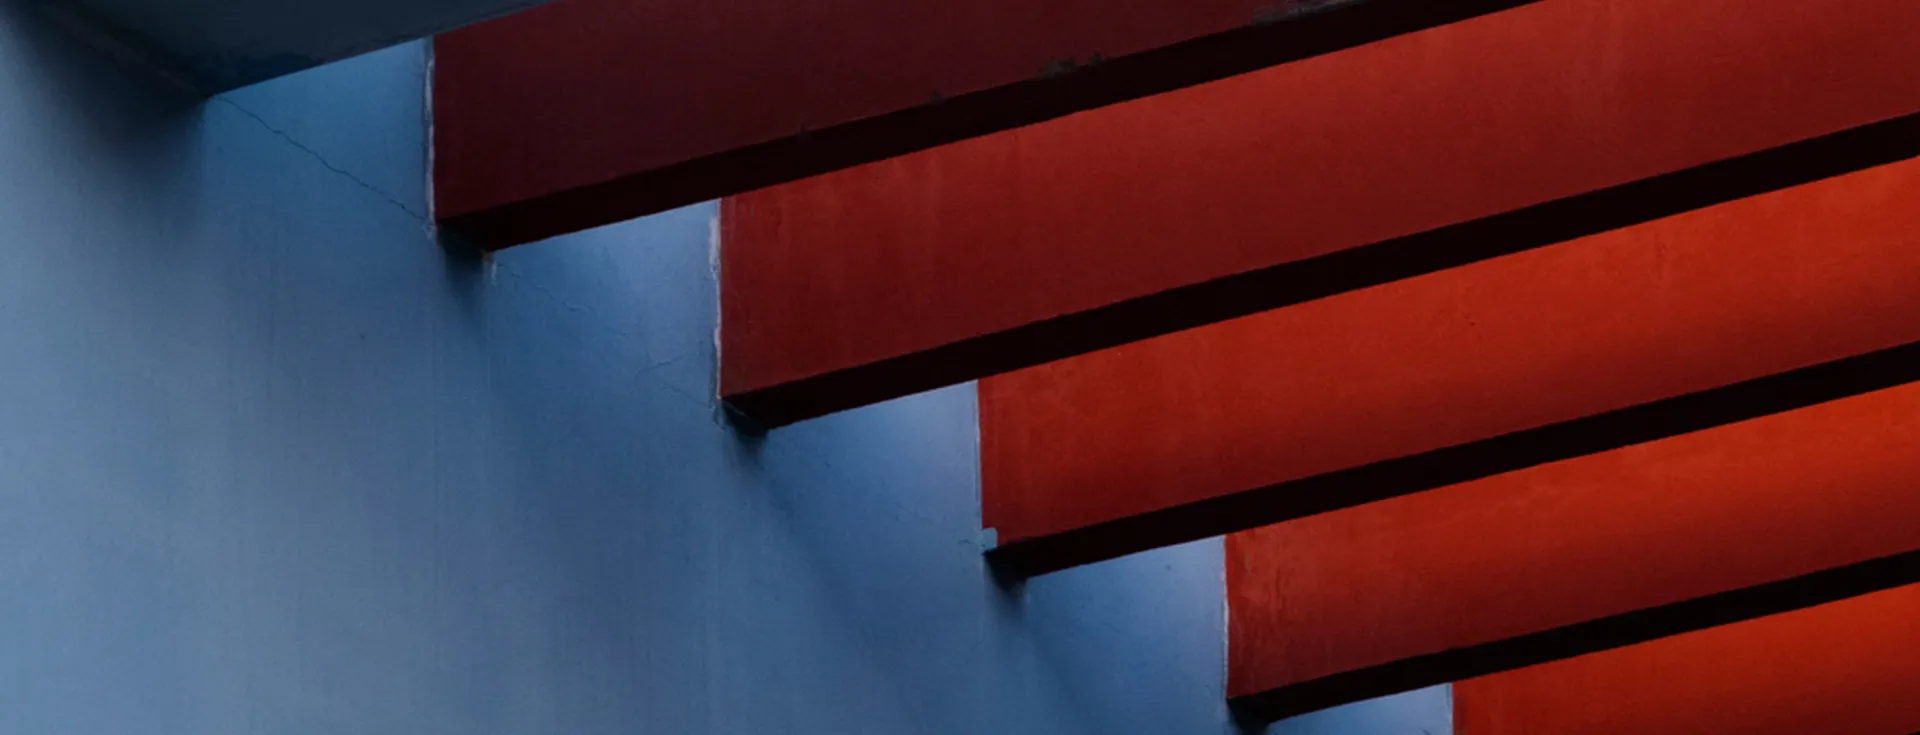 En abstrakt bild av röda trappsteg mot en blå vägg. Kontrasten mellan de två färgerna skapar ett iögonfallande mönster